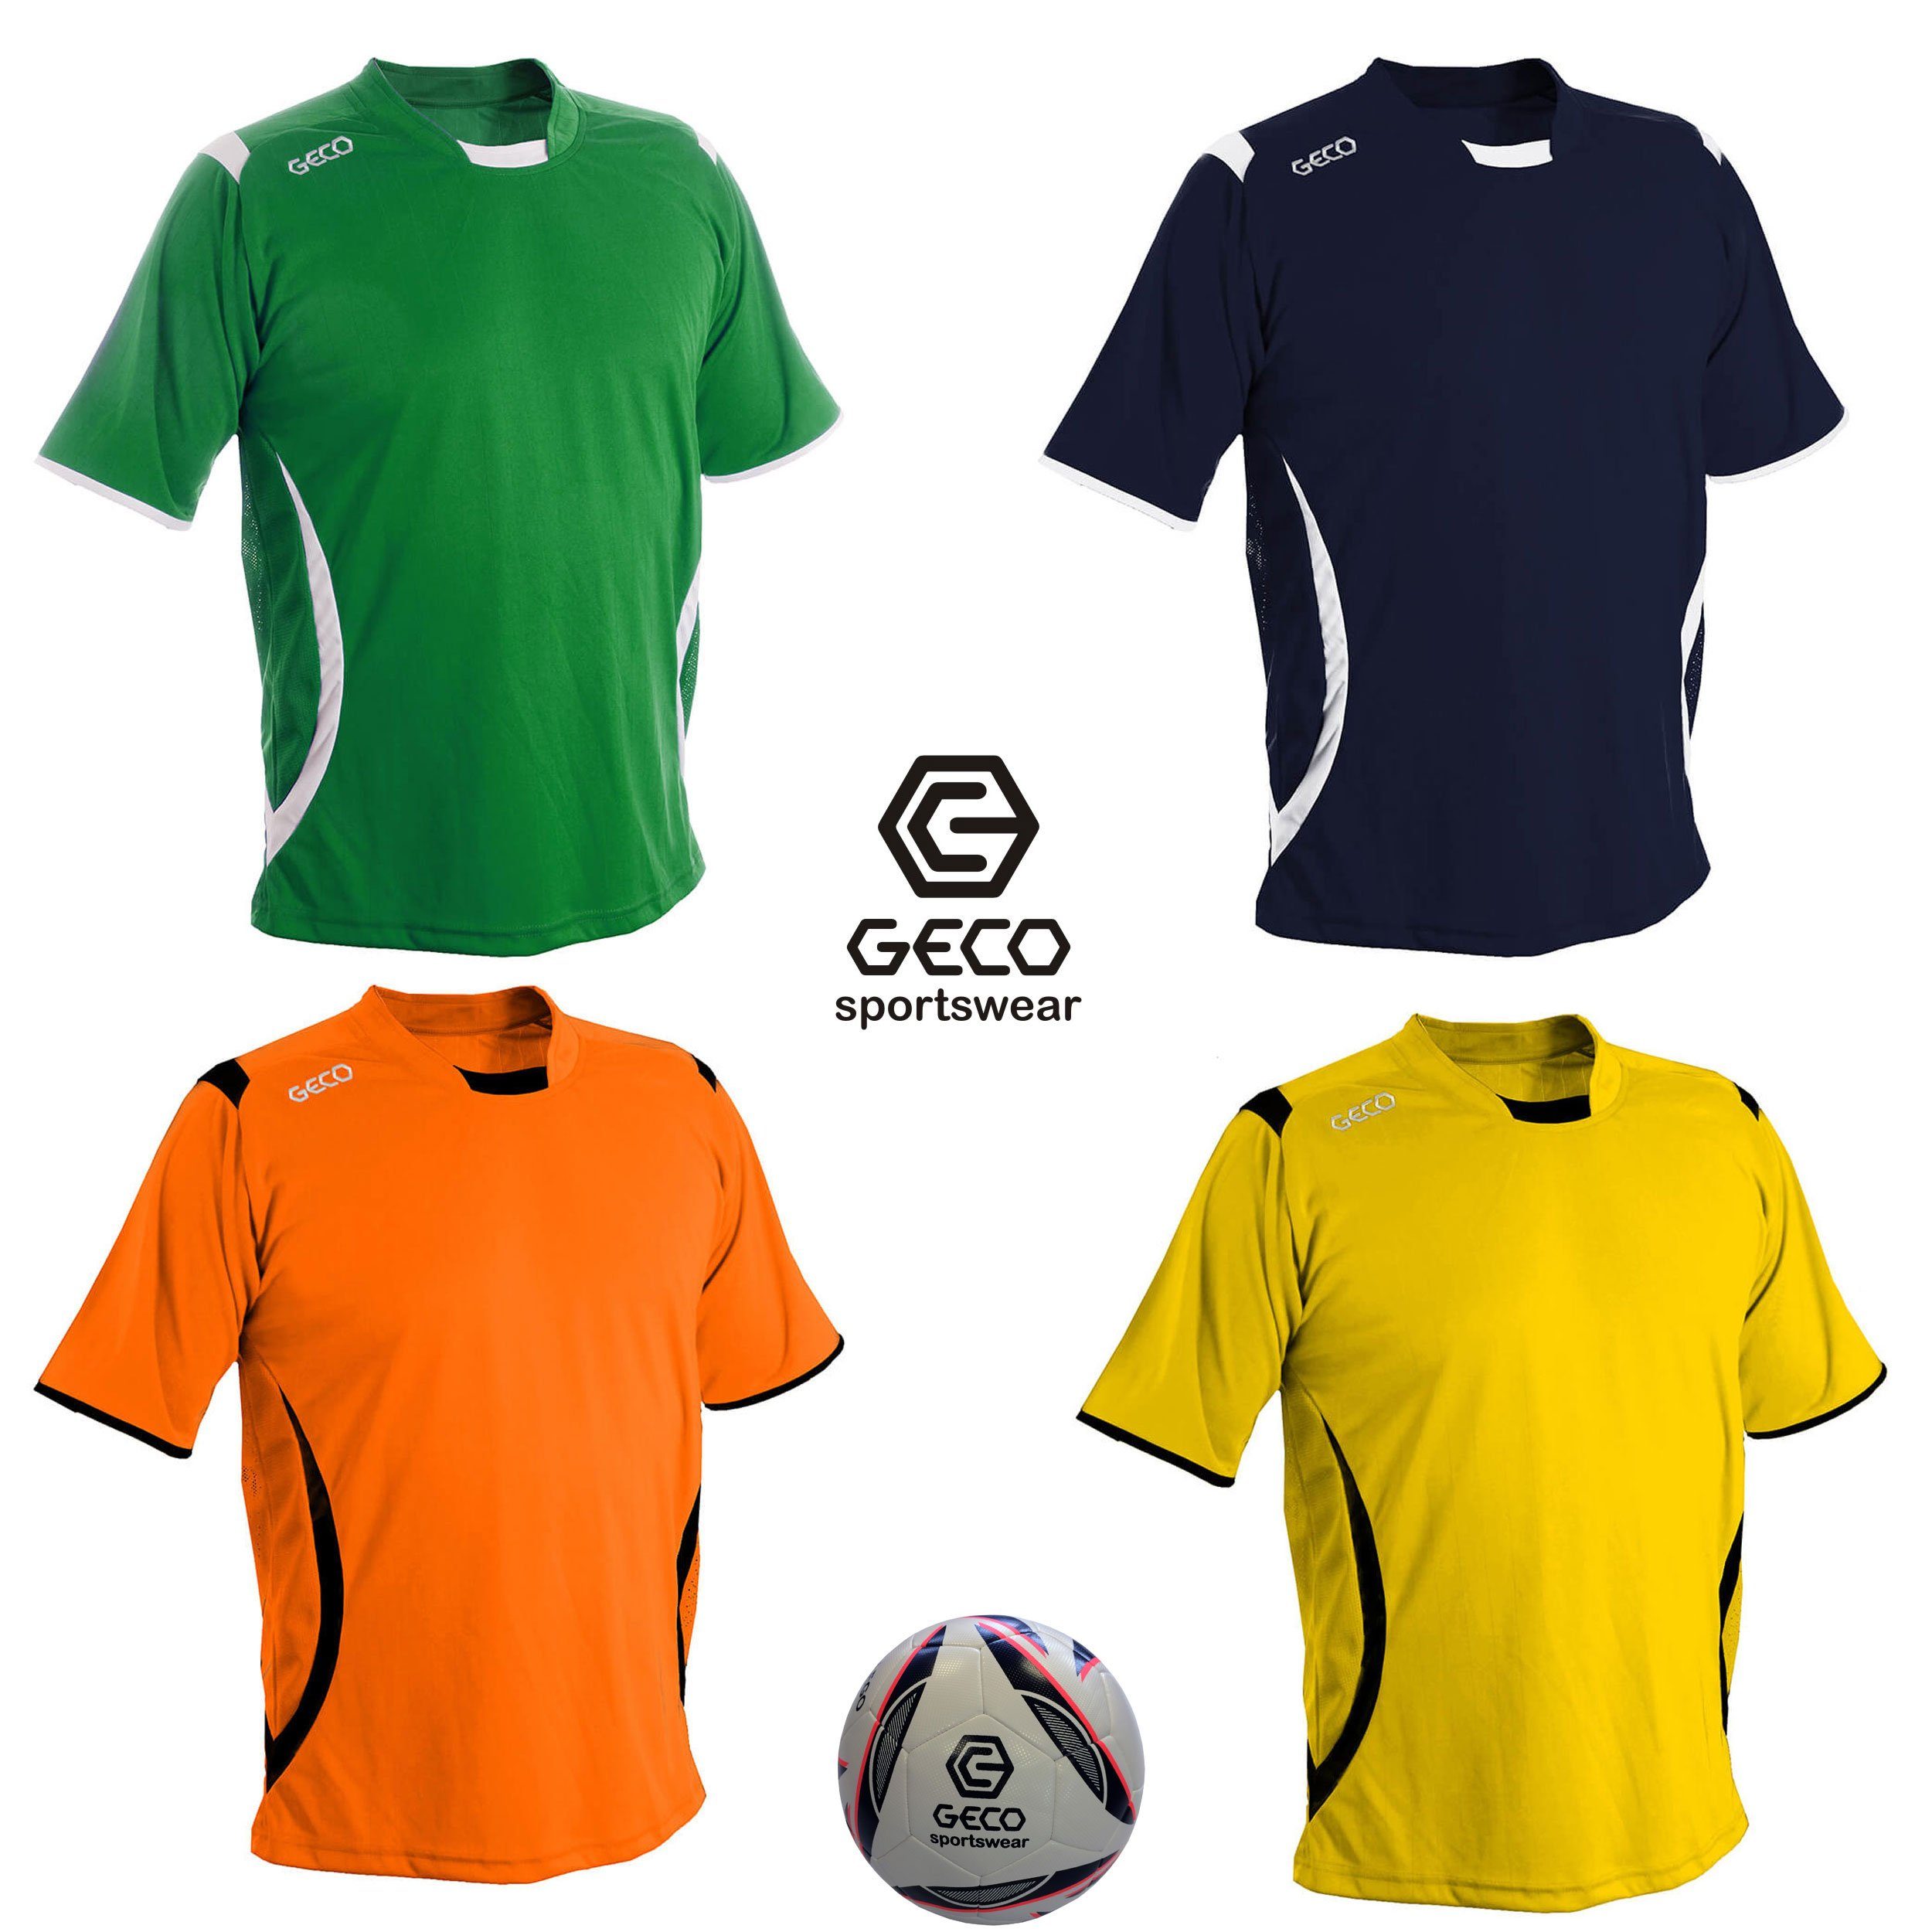 Geco Sportswear Fußballtrikot Fußballtrikot Geco Fußball Trikot Levante kurzarm zweifarbig seitliche Mesh Einsätze navy/weiß